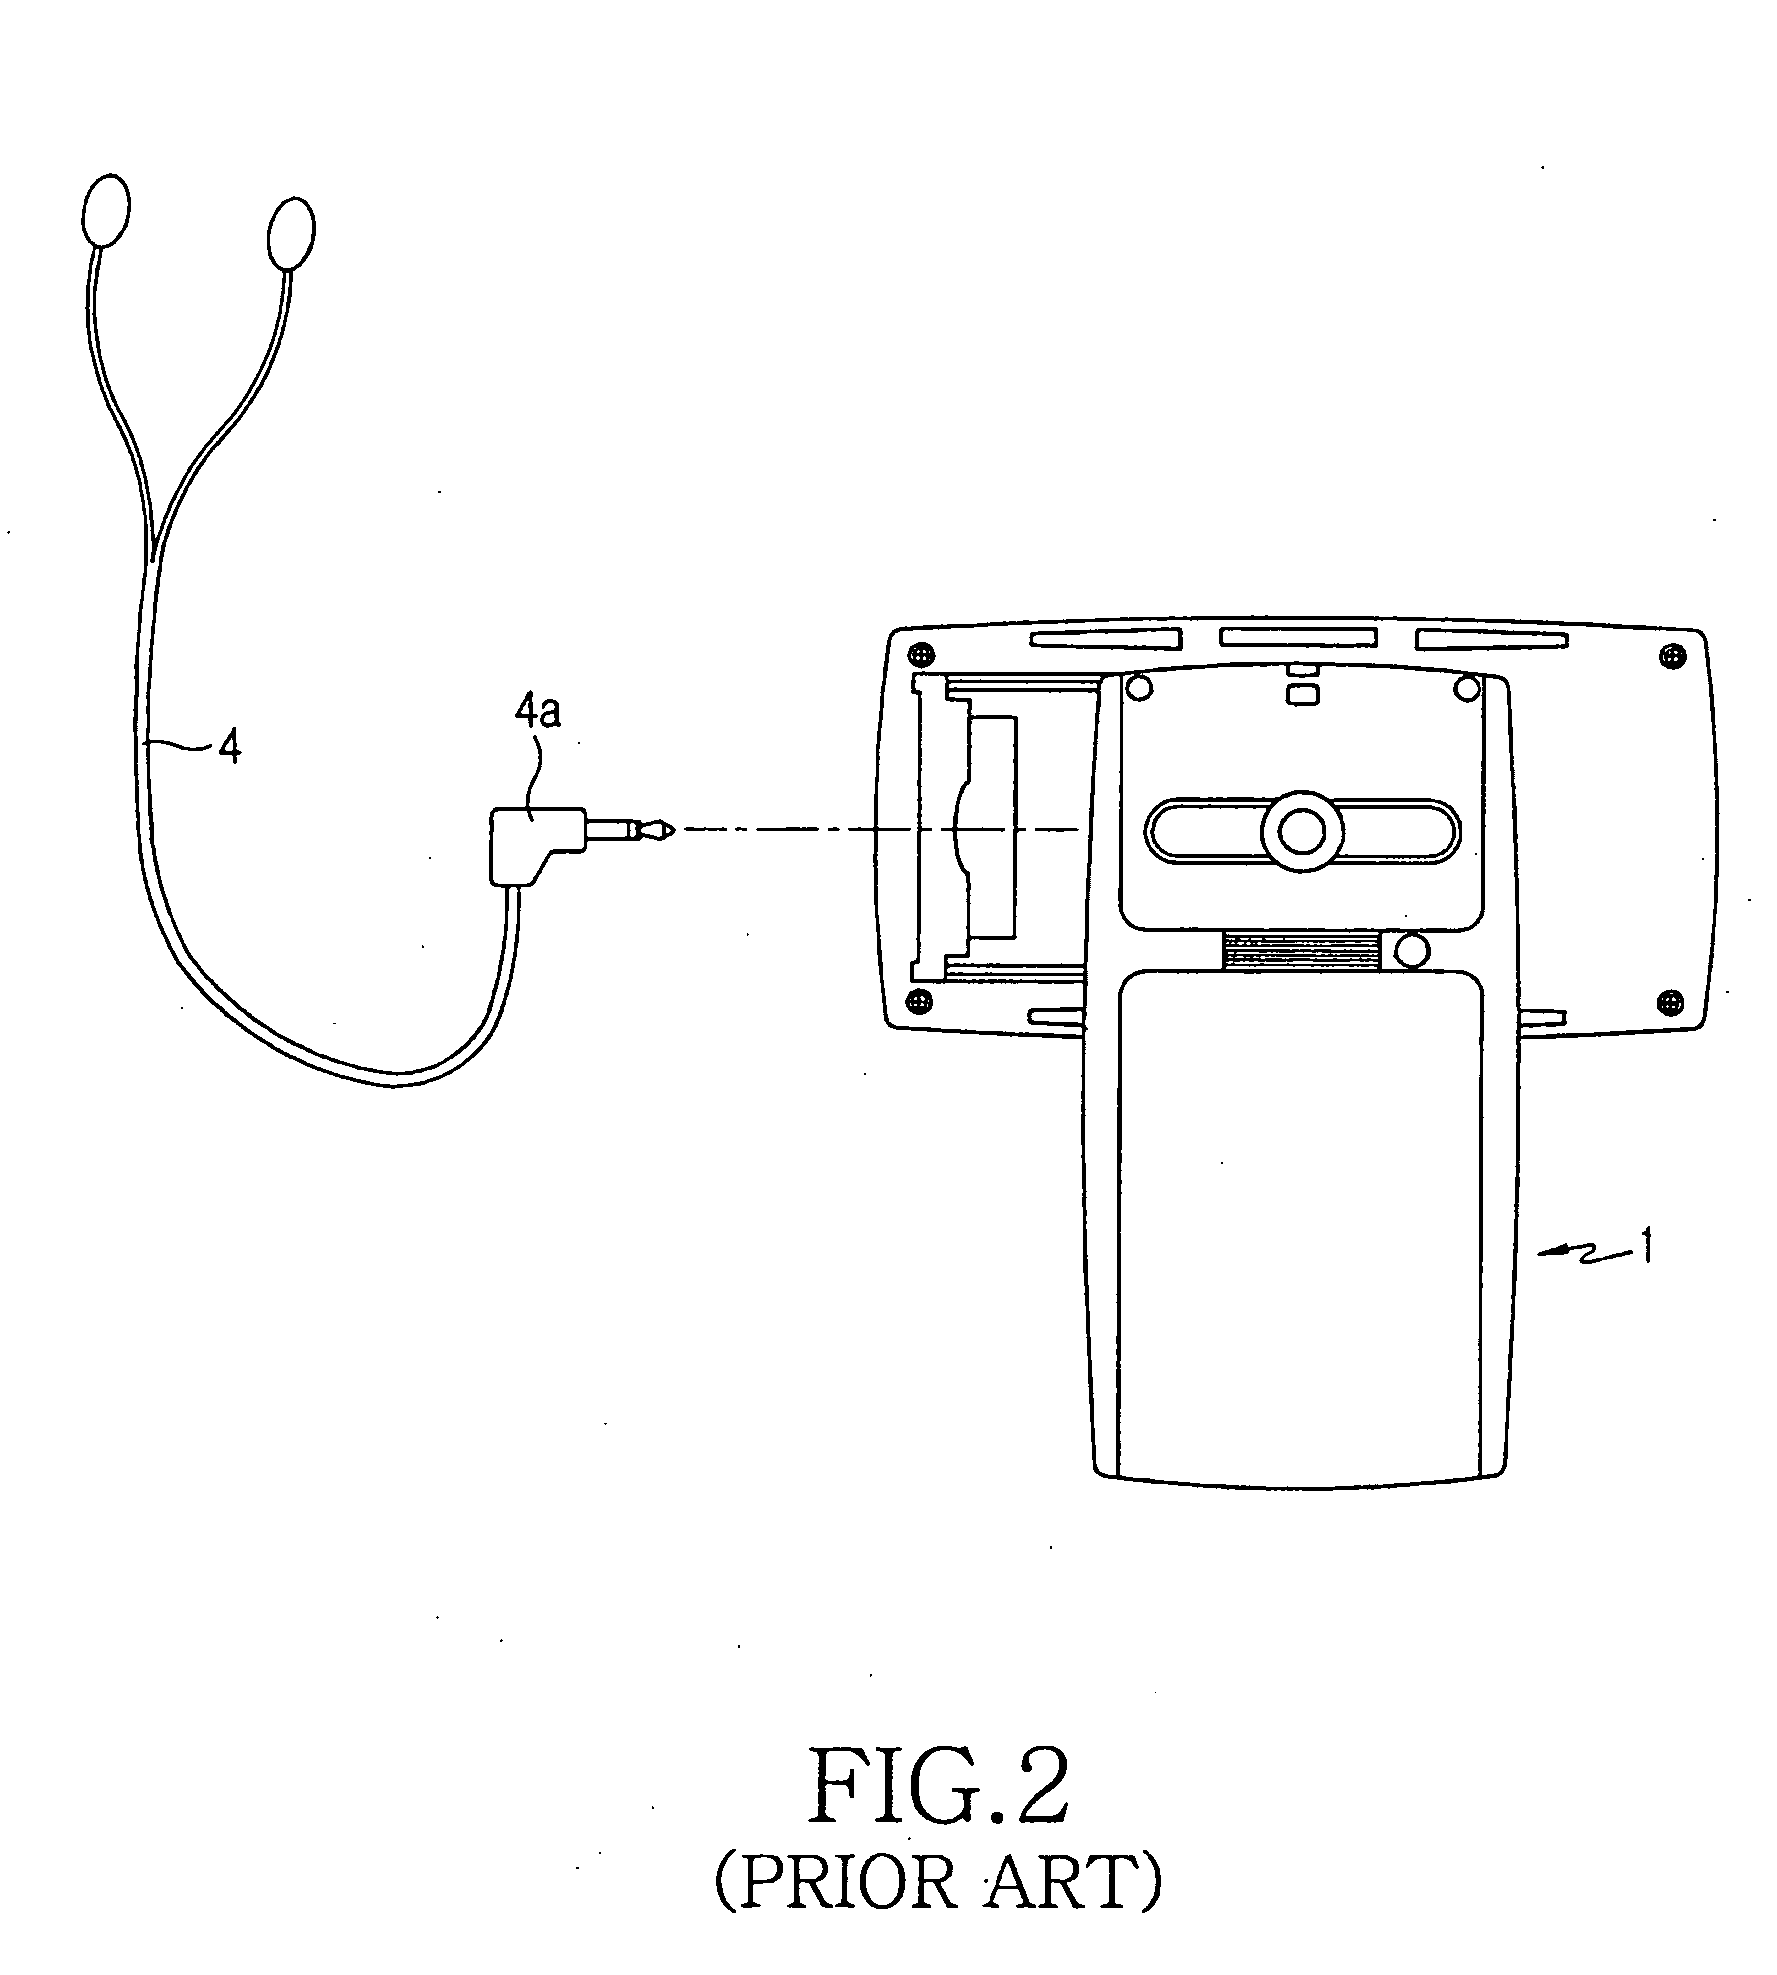 Antenna device for portable terminal